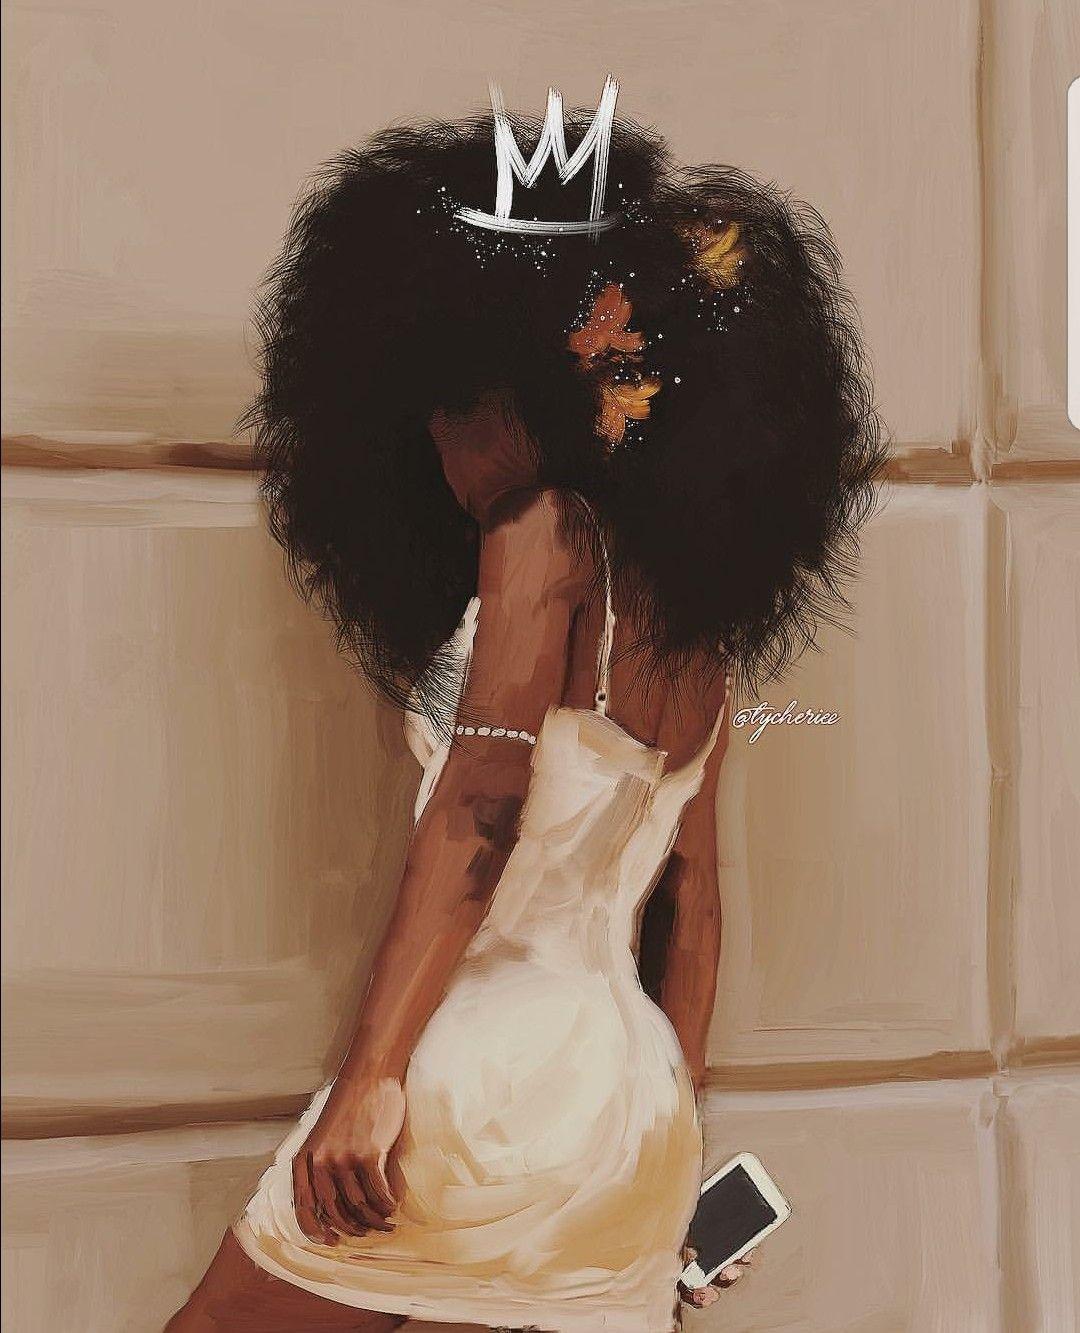 ✨foreveryoung57. Black girl art, Black love art